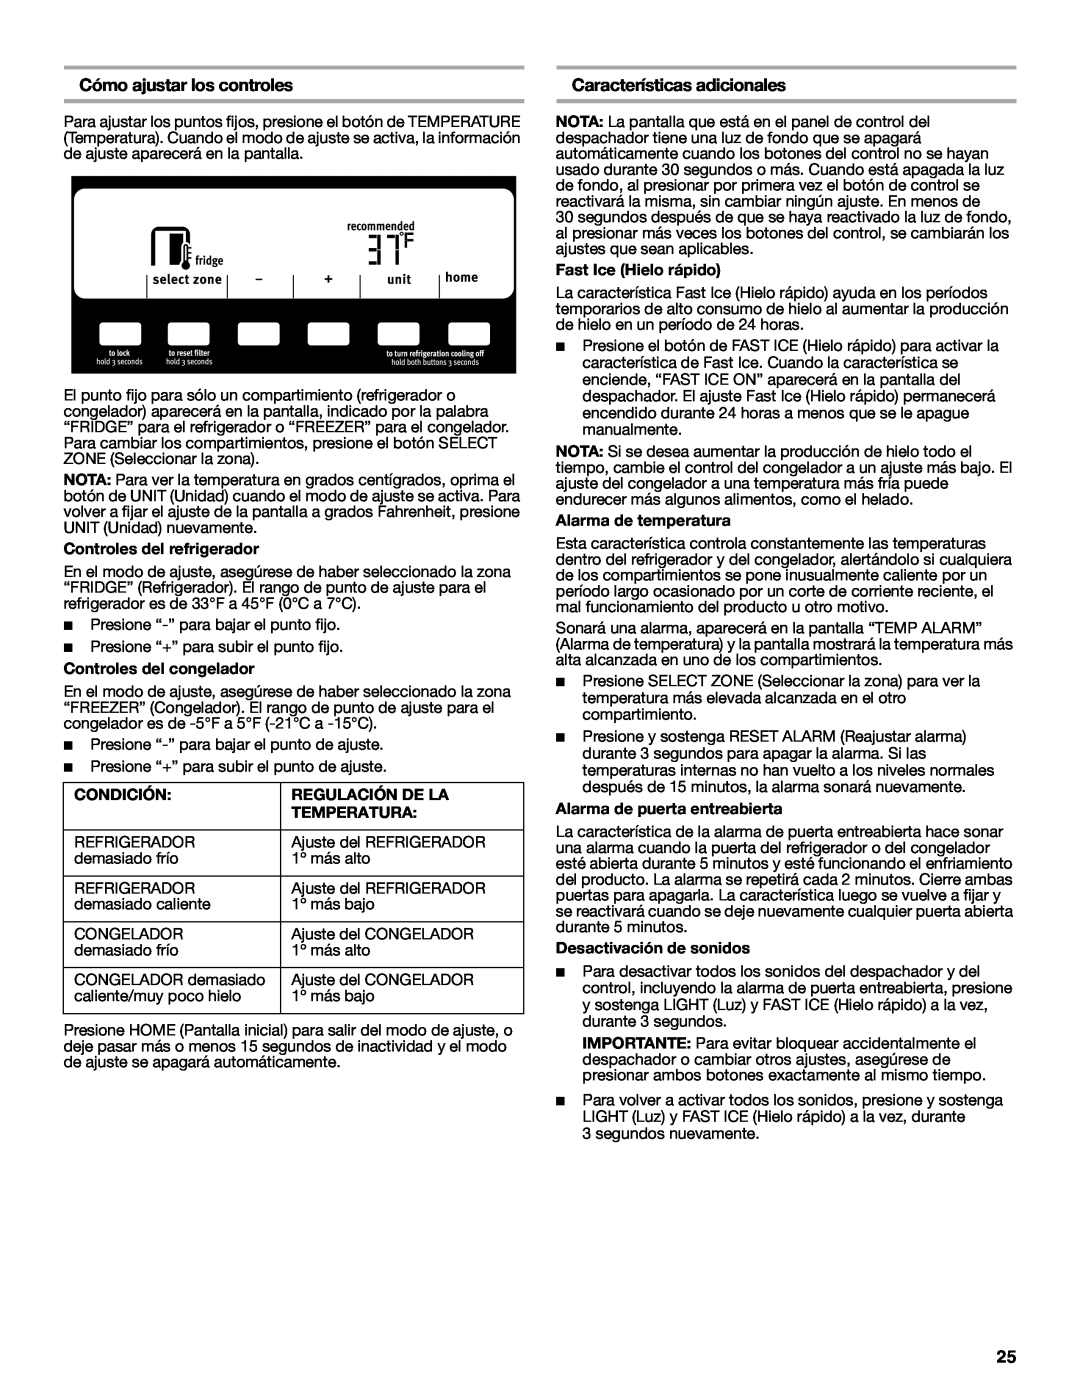 Maytag W10237808A Cómo ajustar los controles, Características adicionales, Controles del refrigerador, Condición 